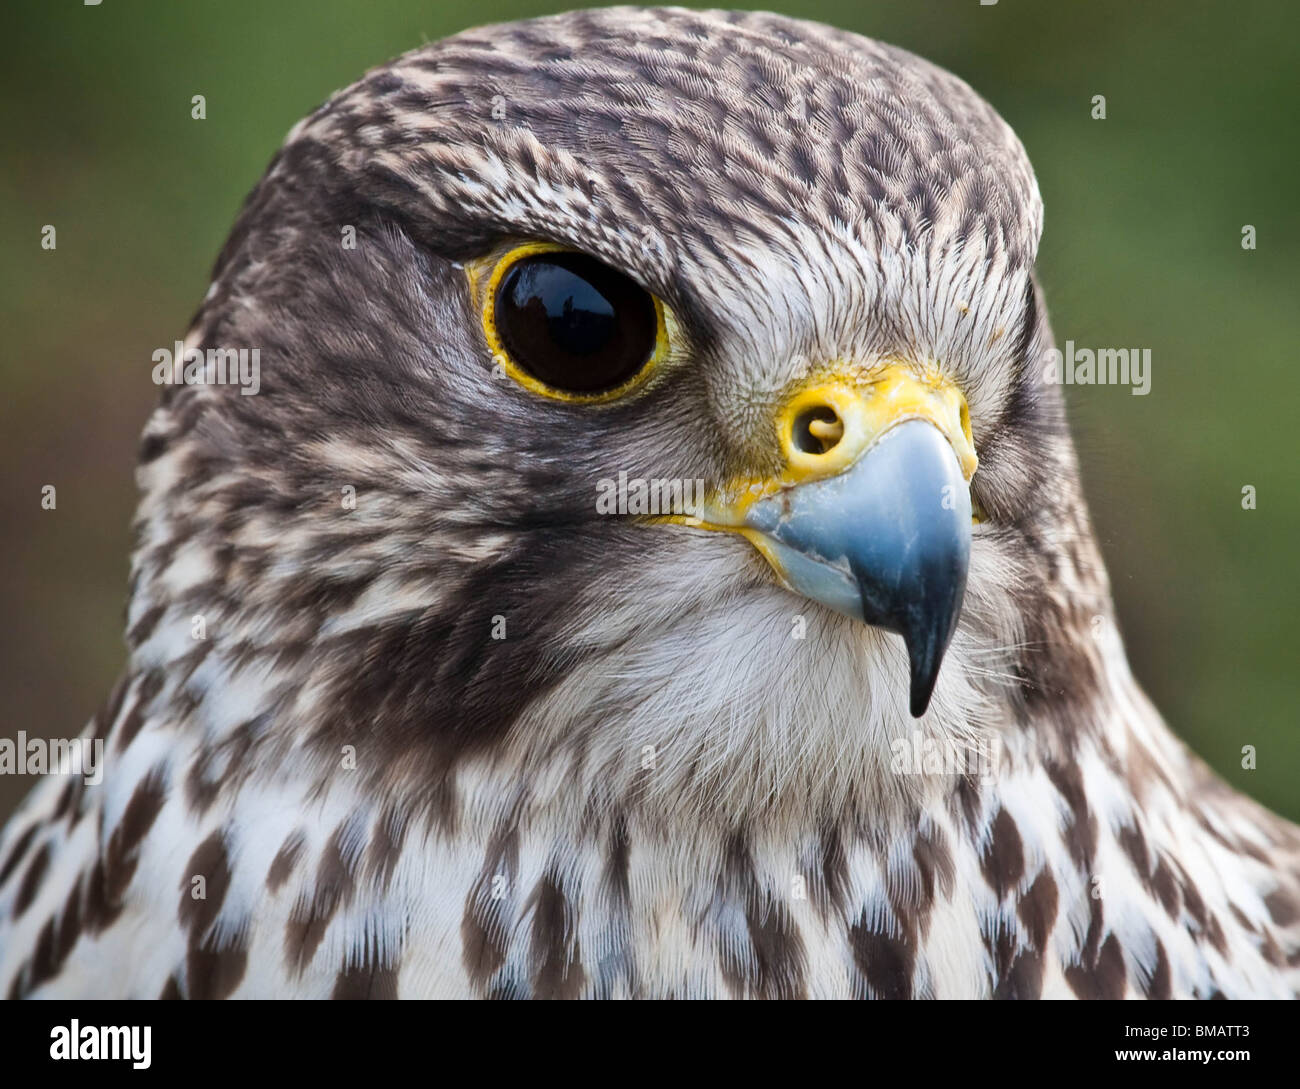 Hawk Kopfporträt nah oben, Raubvogel Stockfoto